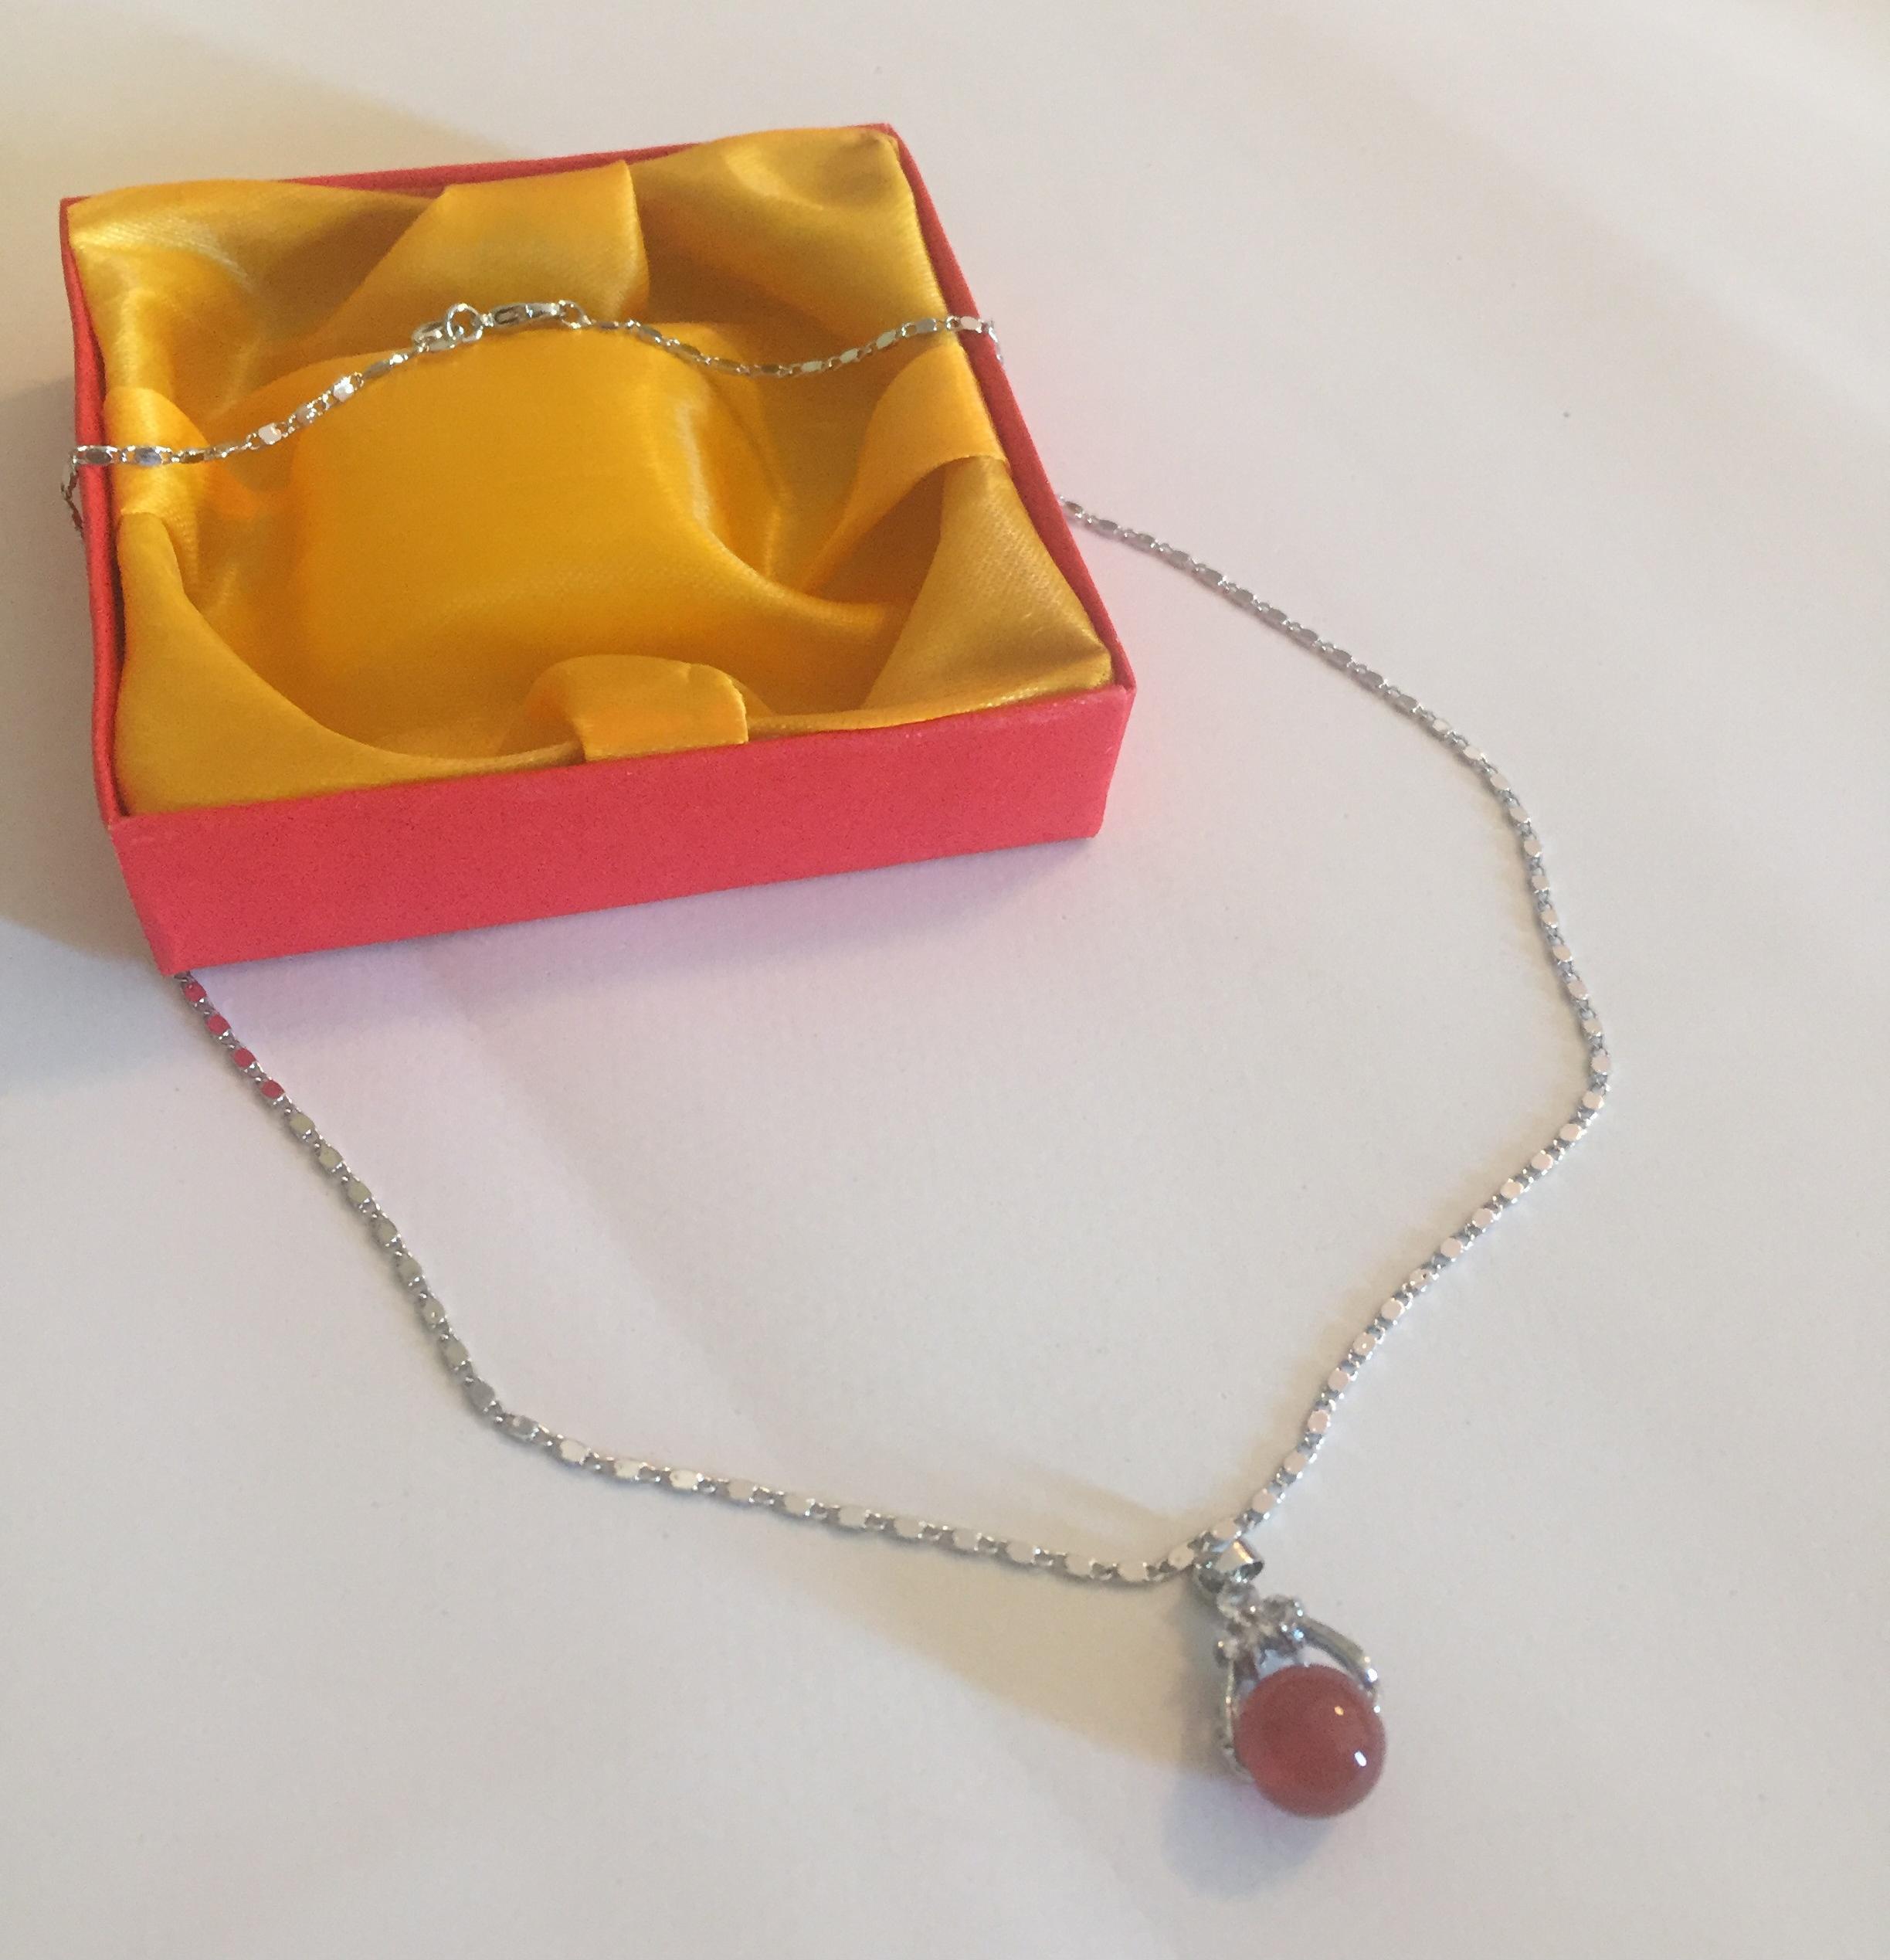 Set Mặt dây chuyền Hồng Ngọc Malaysia cao 0.8cm Hình tròn - Dây chuyền hợp kim mạ Titanium không rỉ không bay màu dài 45 cm và hộp đựng cung hỷ, Thiết kế đơn giản.